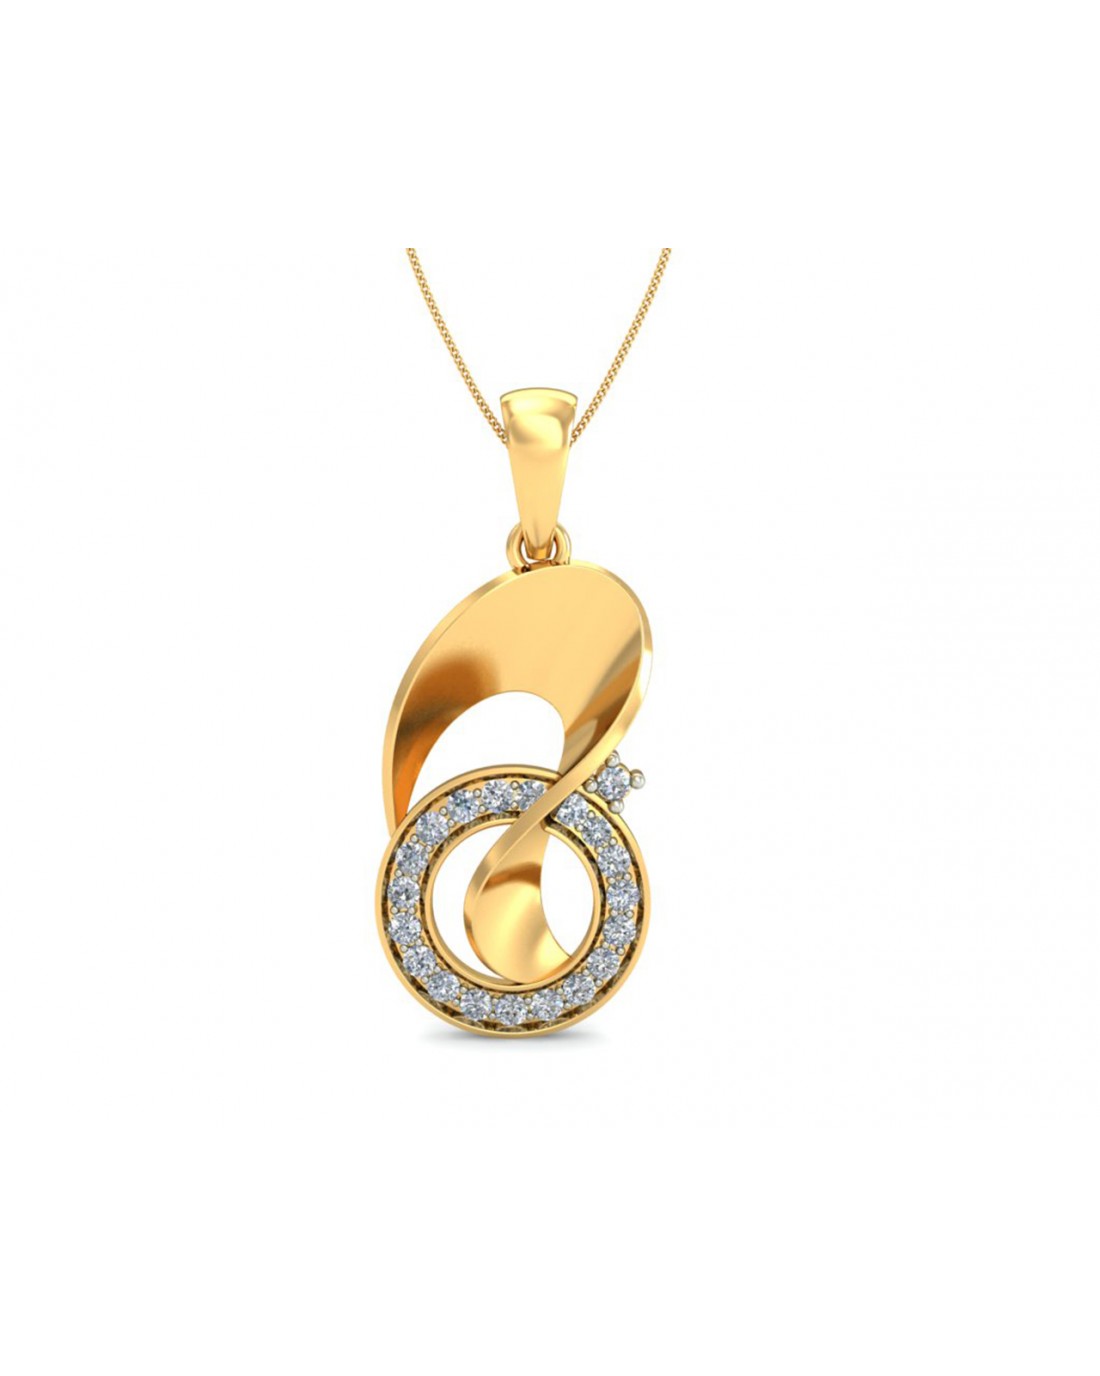 Olivia Gold Diamond Pendant in 14k hallmarked gold